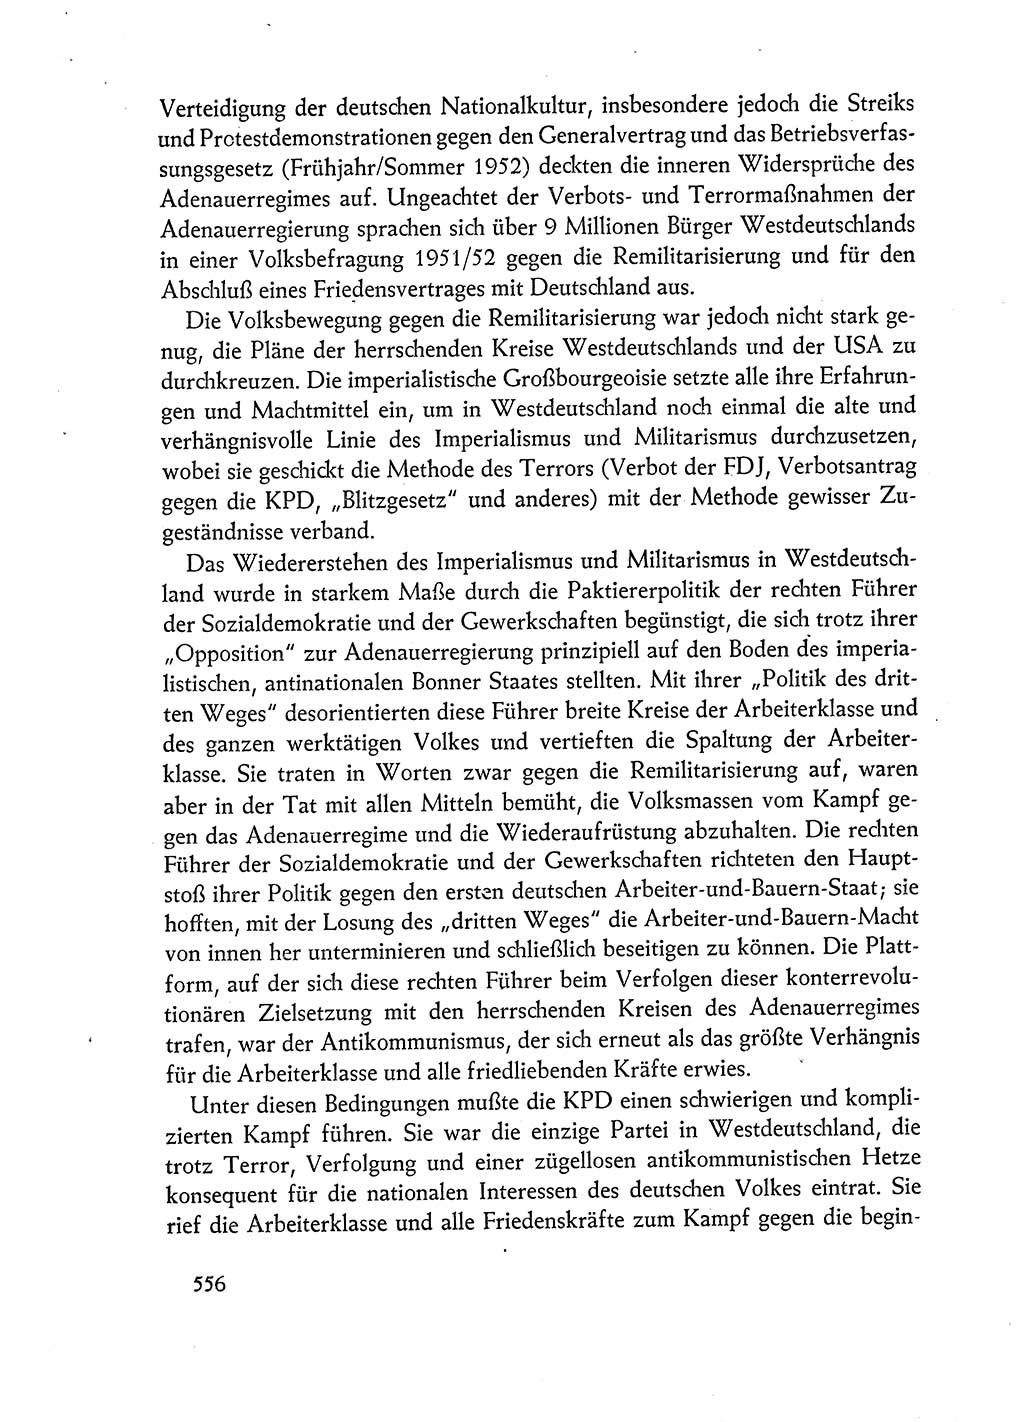 Dokumente der Sozialistischen Einheitspartei Deutschlands (SED) [Deutsche Demokratische Republik (DDR)] 1962-1963, Seite 556 (Dok. SED DDR 1962-1963, S. 556)